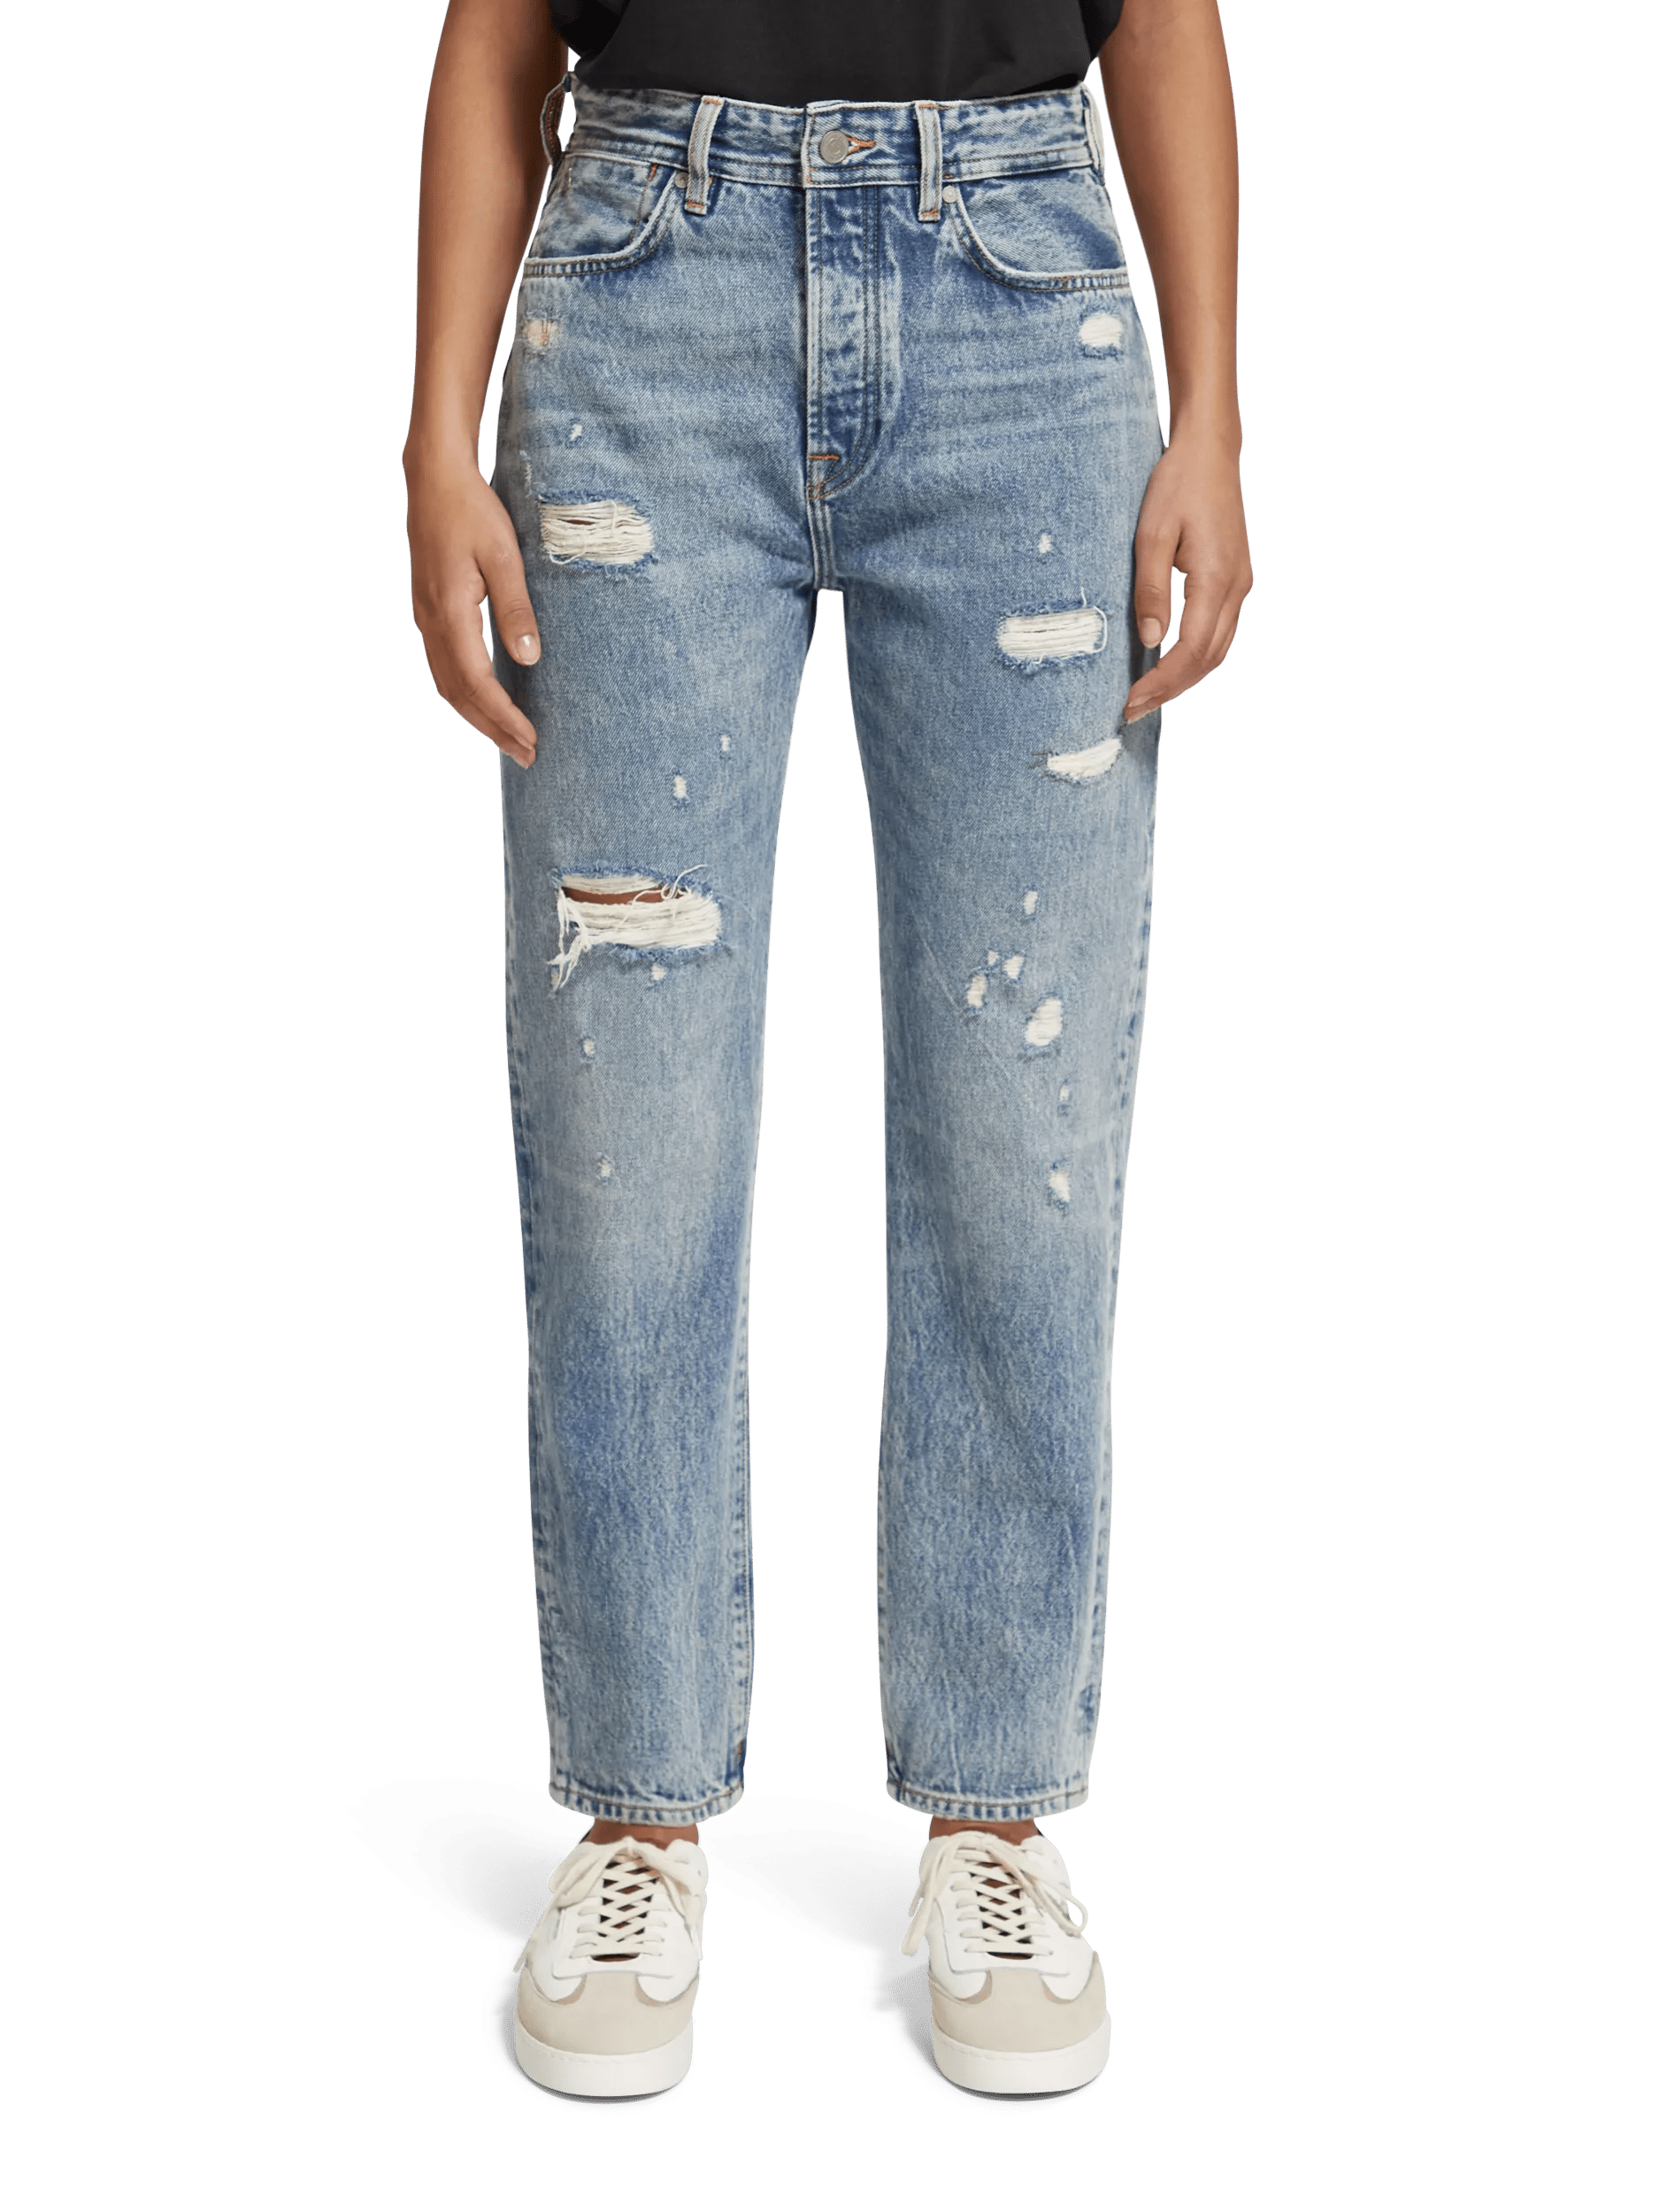 The Buzz boyfriend fit jeans